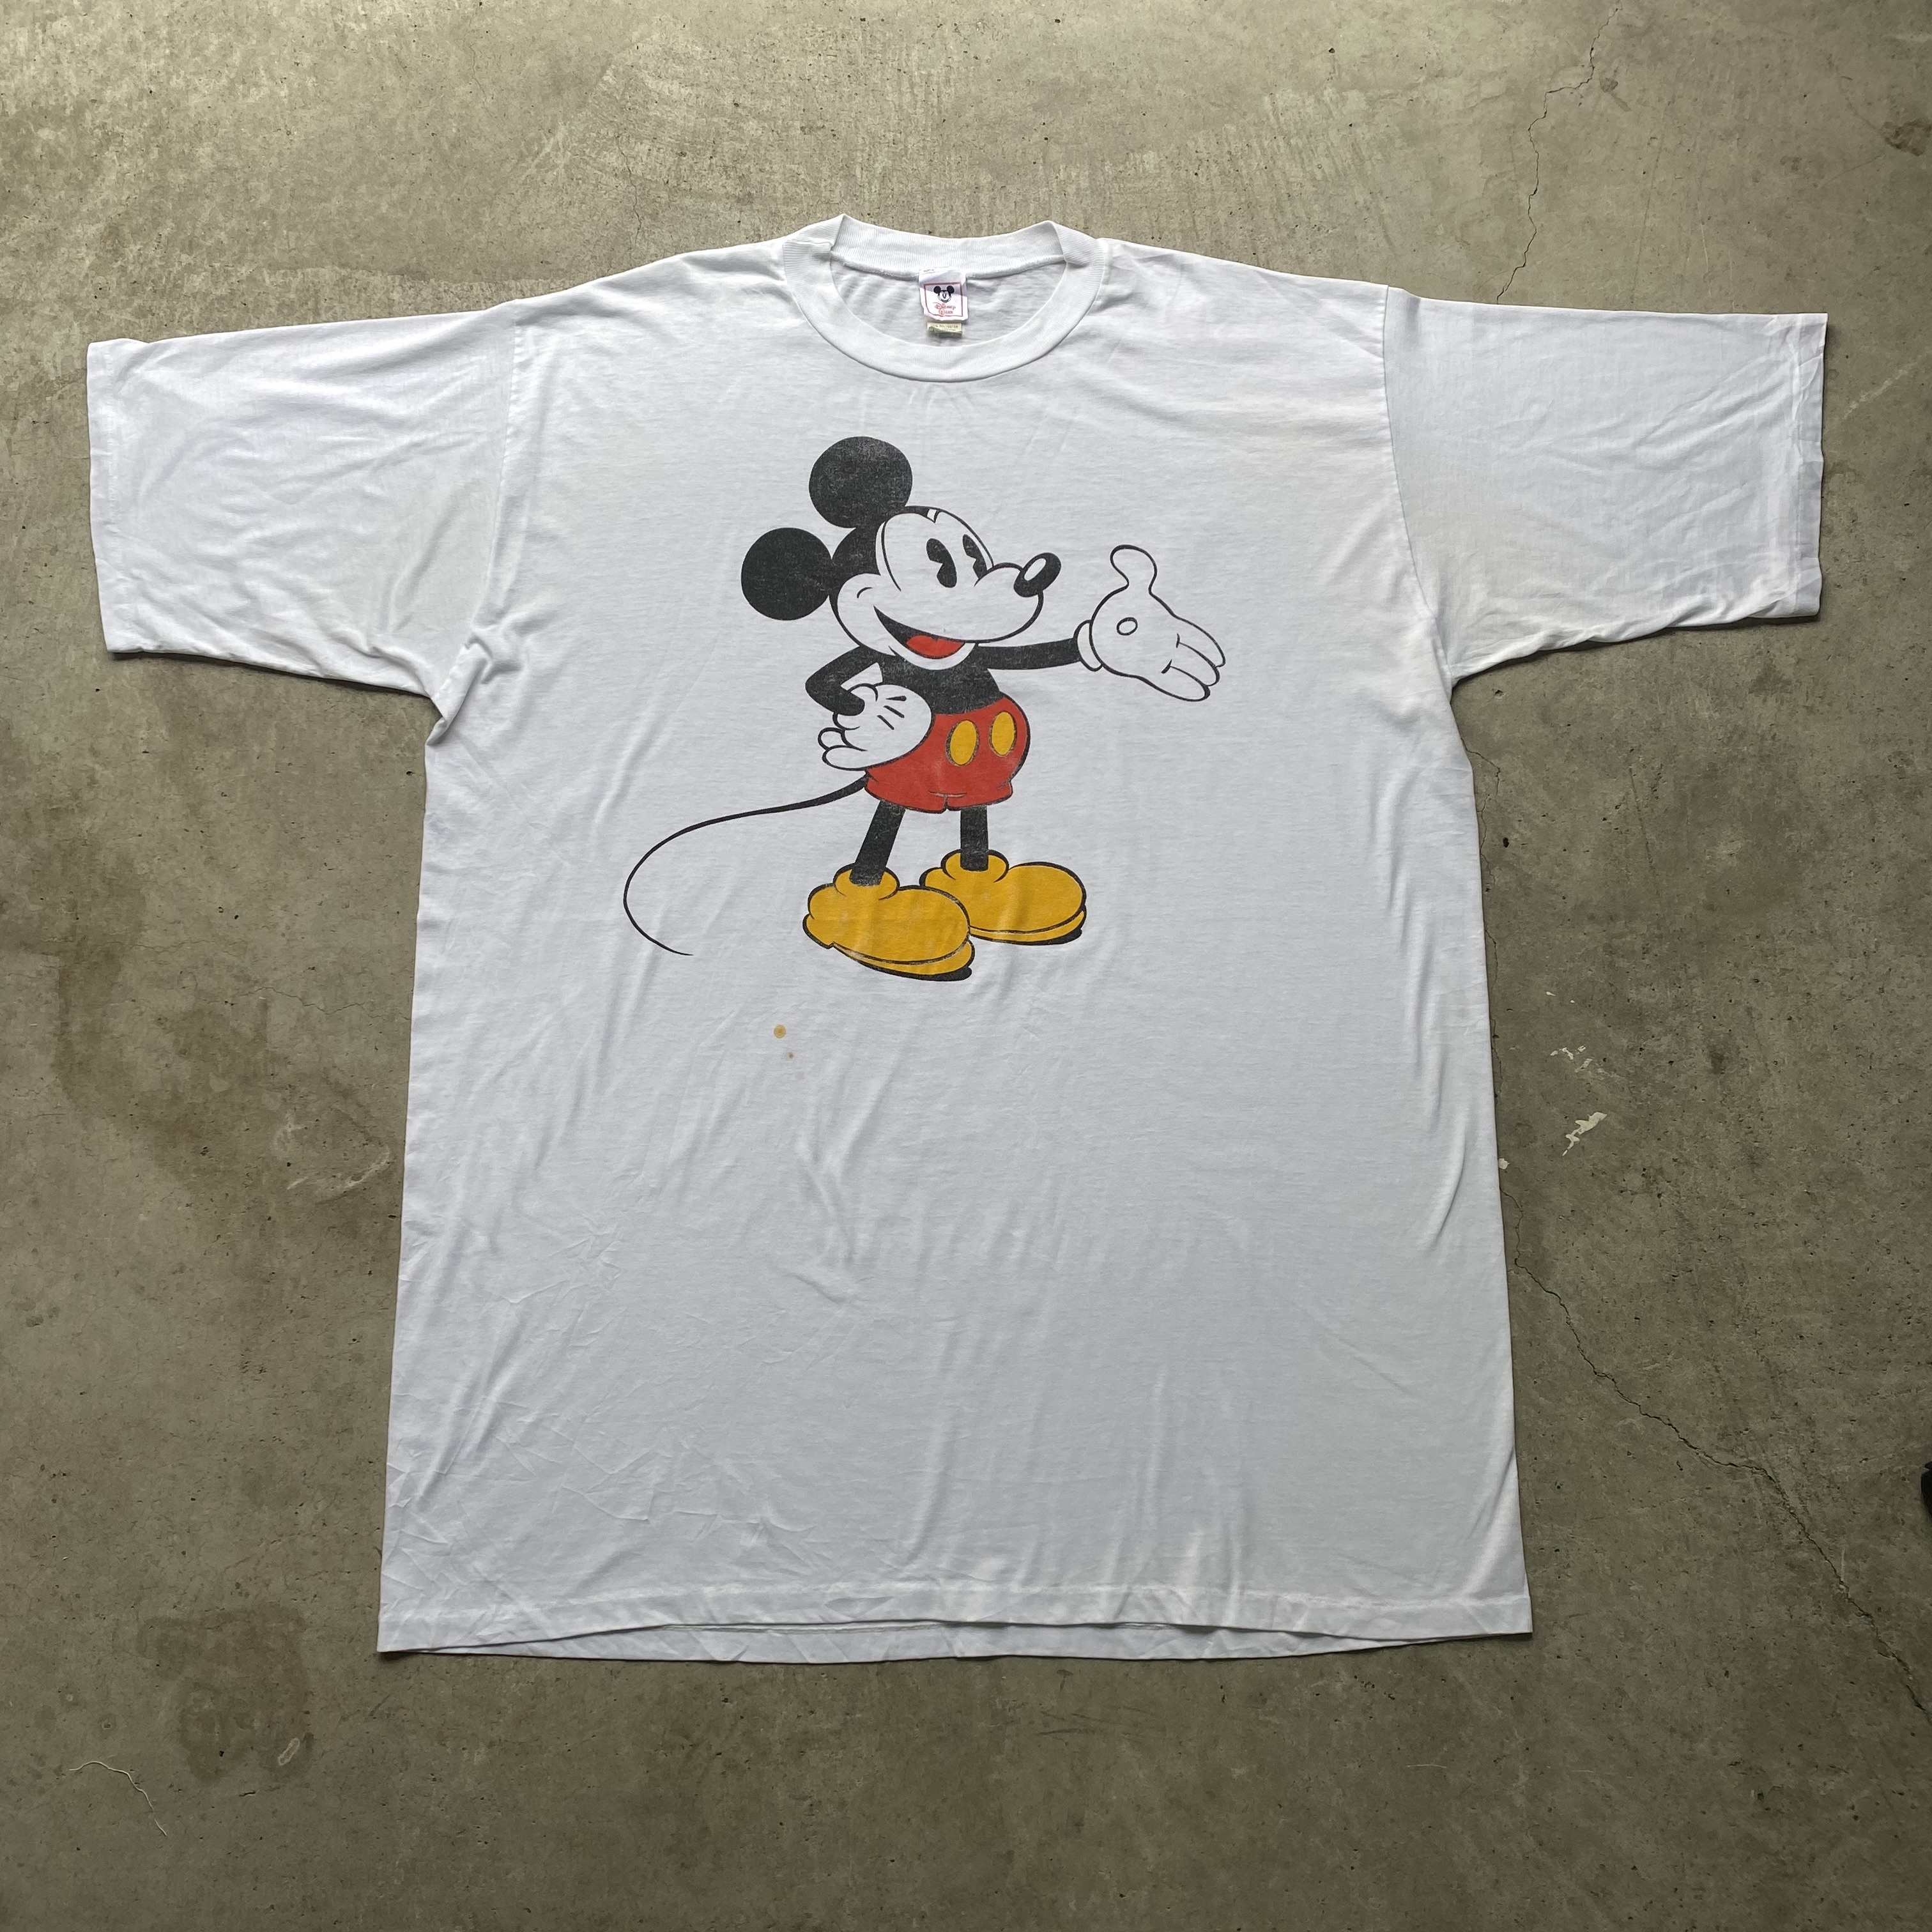 ビッグサイズ 80年代 Disney Wear ディズニー Mickey Mouse ミッキーマウス プリントtシャツ キャラクターtシャツ ワンピース メンズ レディース ワンサイズ 古着 Tシャツ Cave 古着屋 公式 古着通販サイト